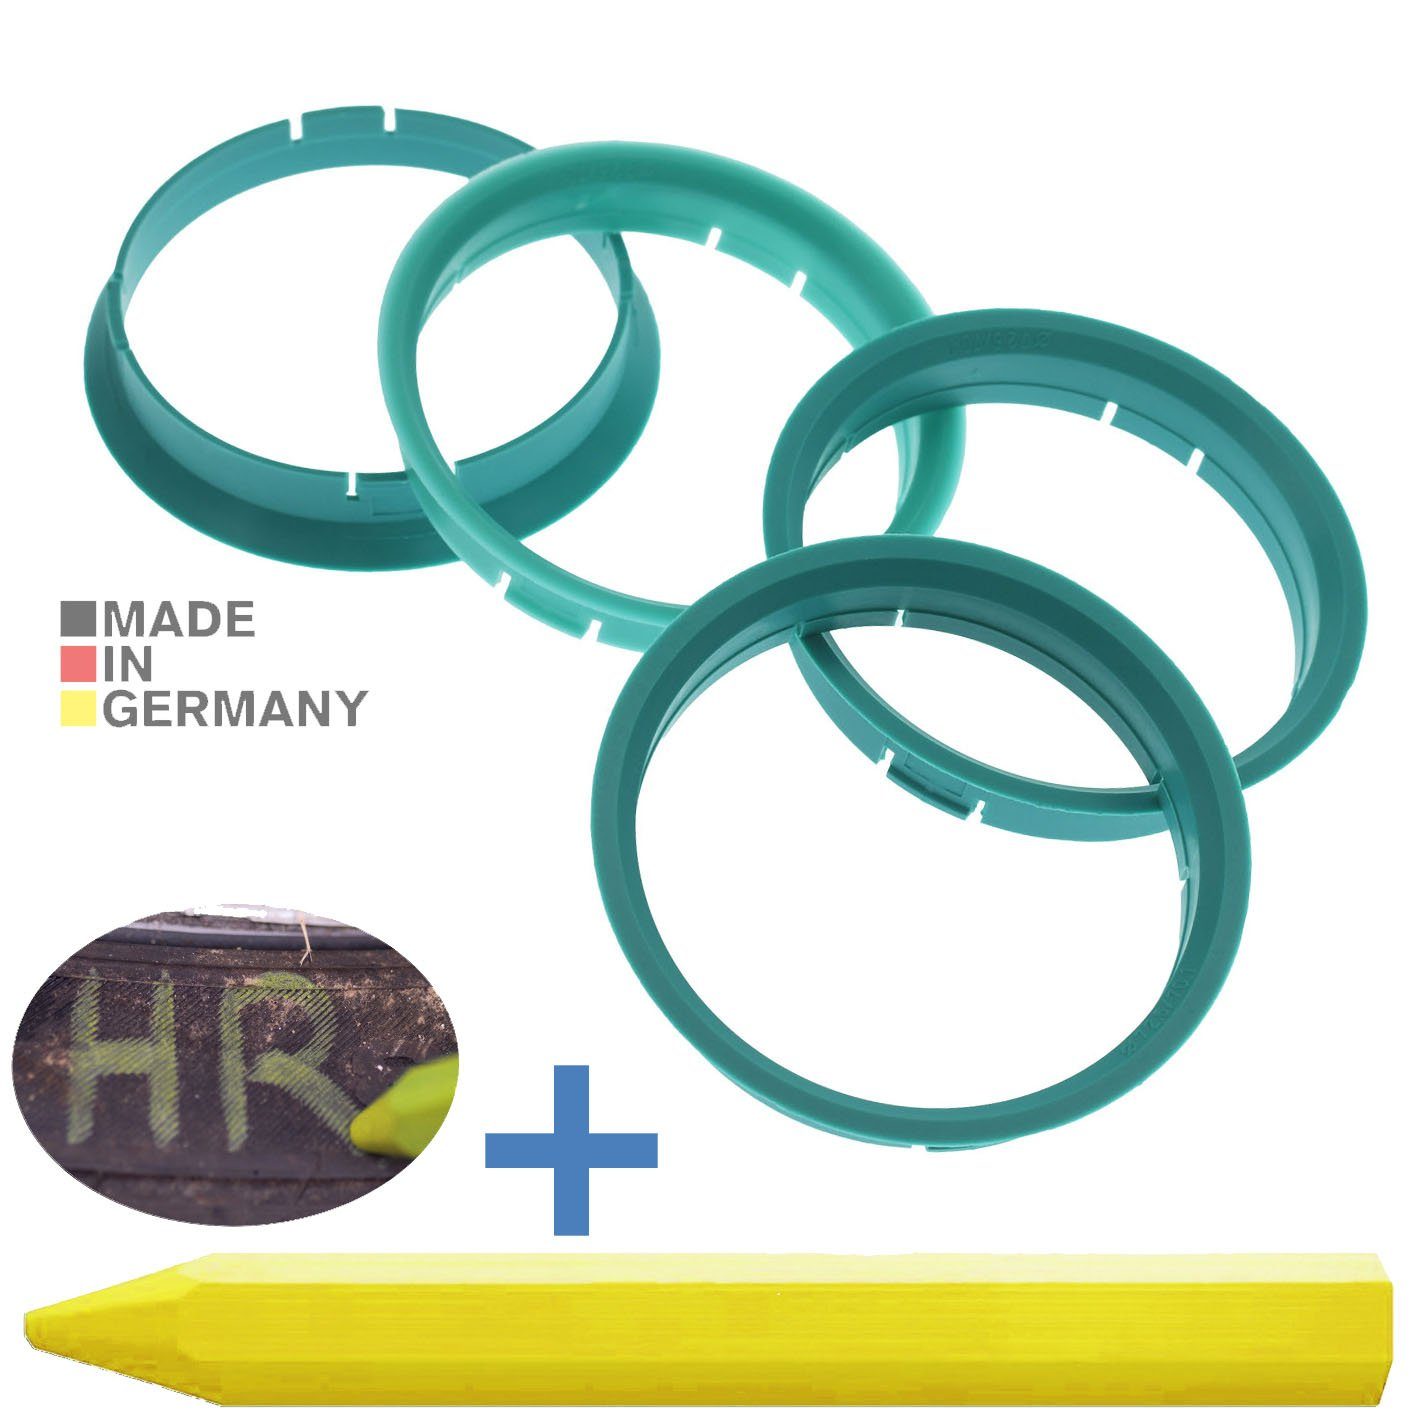 RKC Reifenstift 4X Zentrierringe Türkis Felgen Ringe + 1x Reifen Kreide Fett Stift, Maße: 72,5 x 70,1 mm